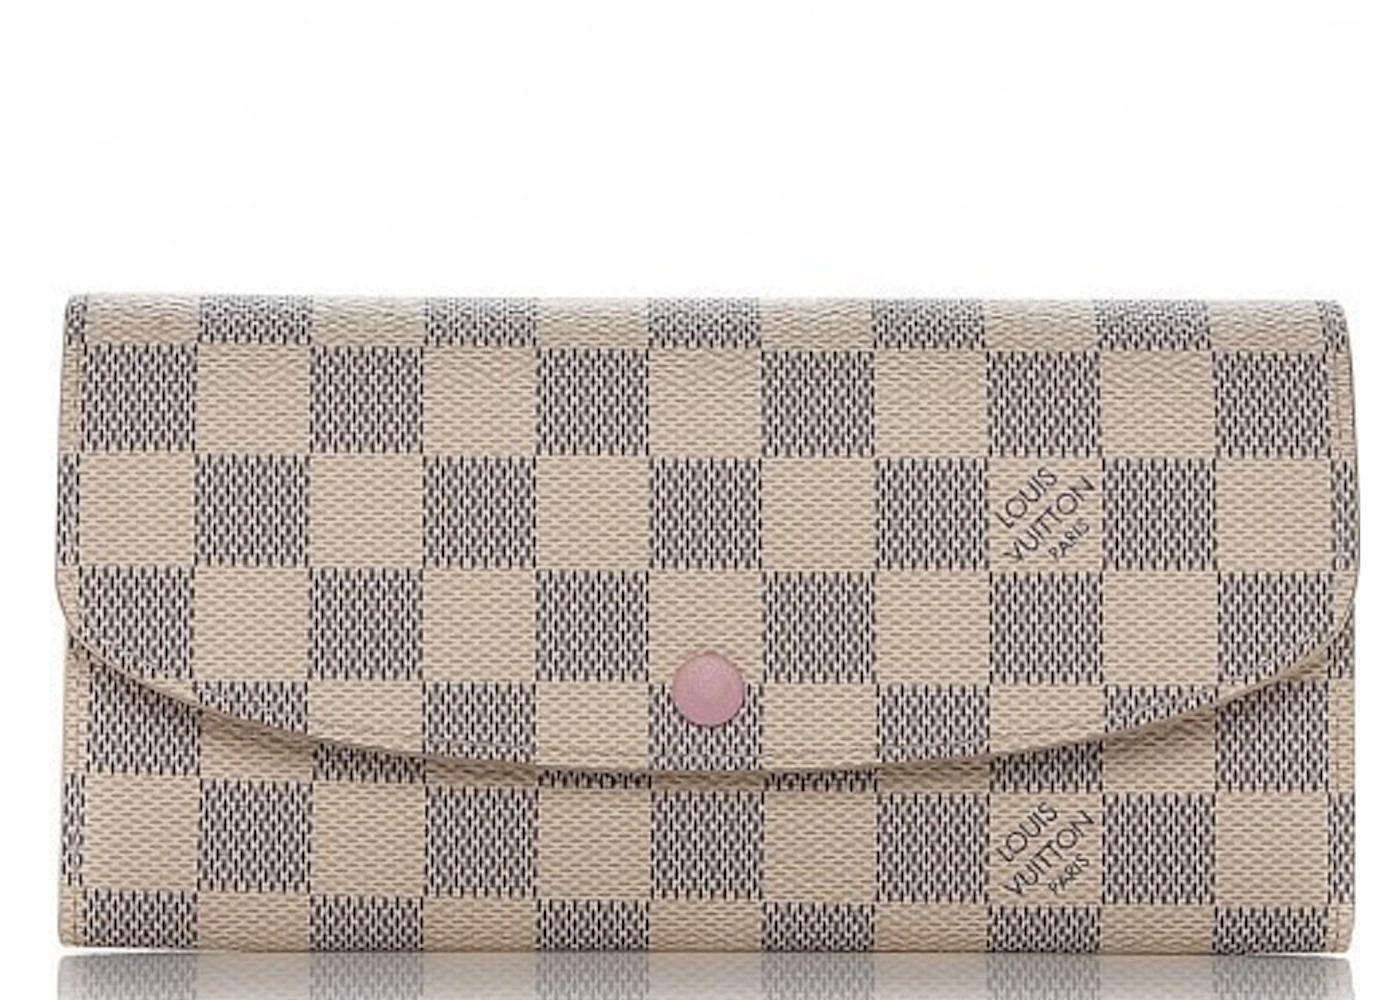 azur wallet pink